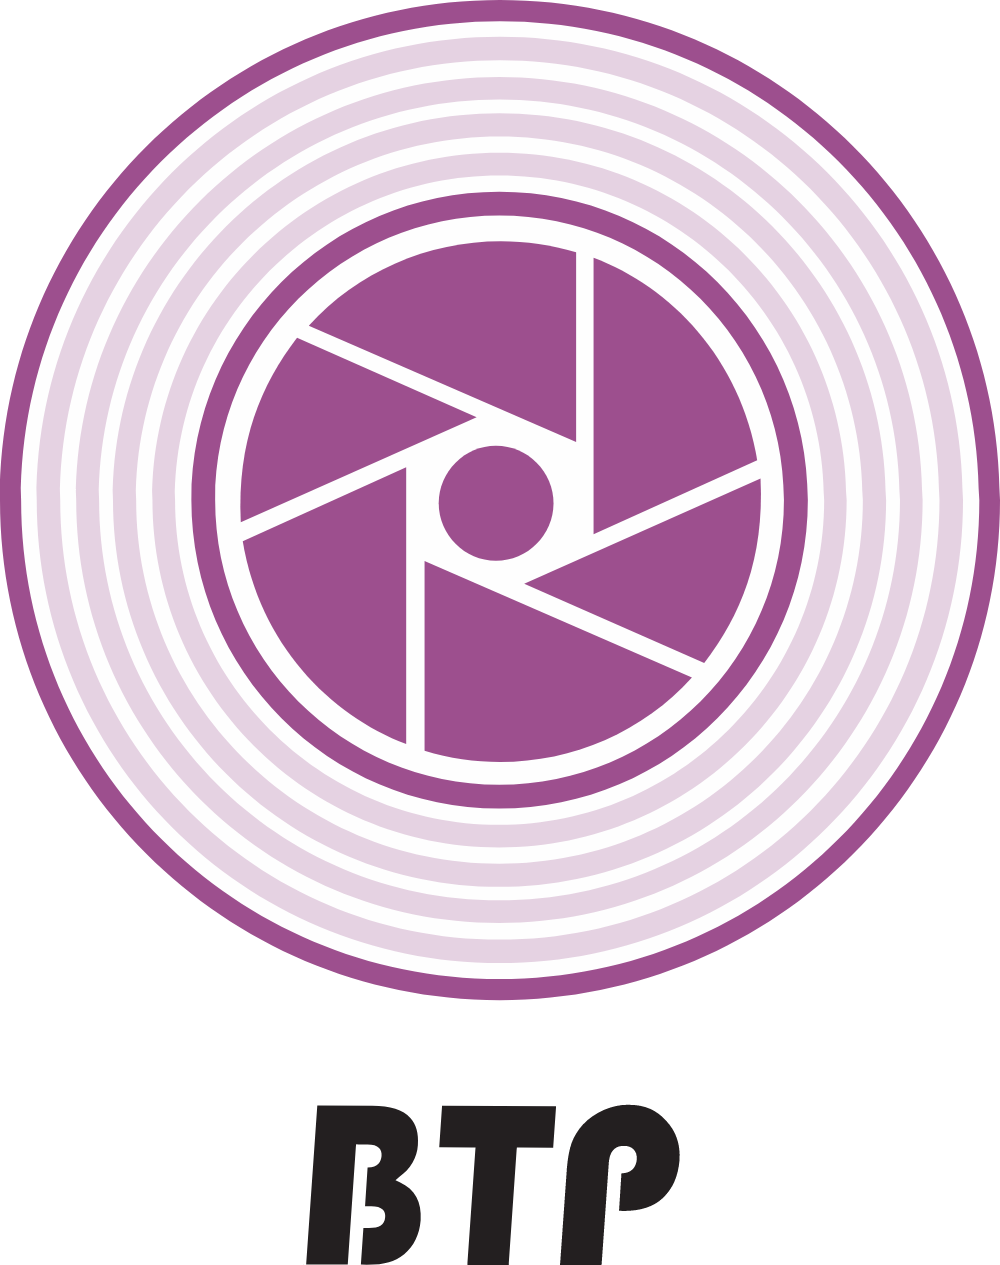 Bahagian Teknologi Pendidikan (BTP) Logo Logos